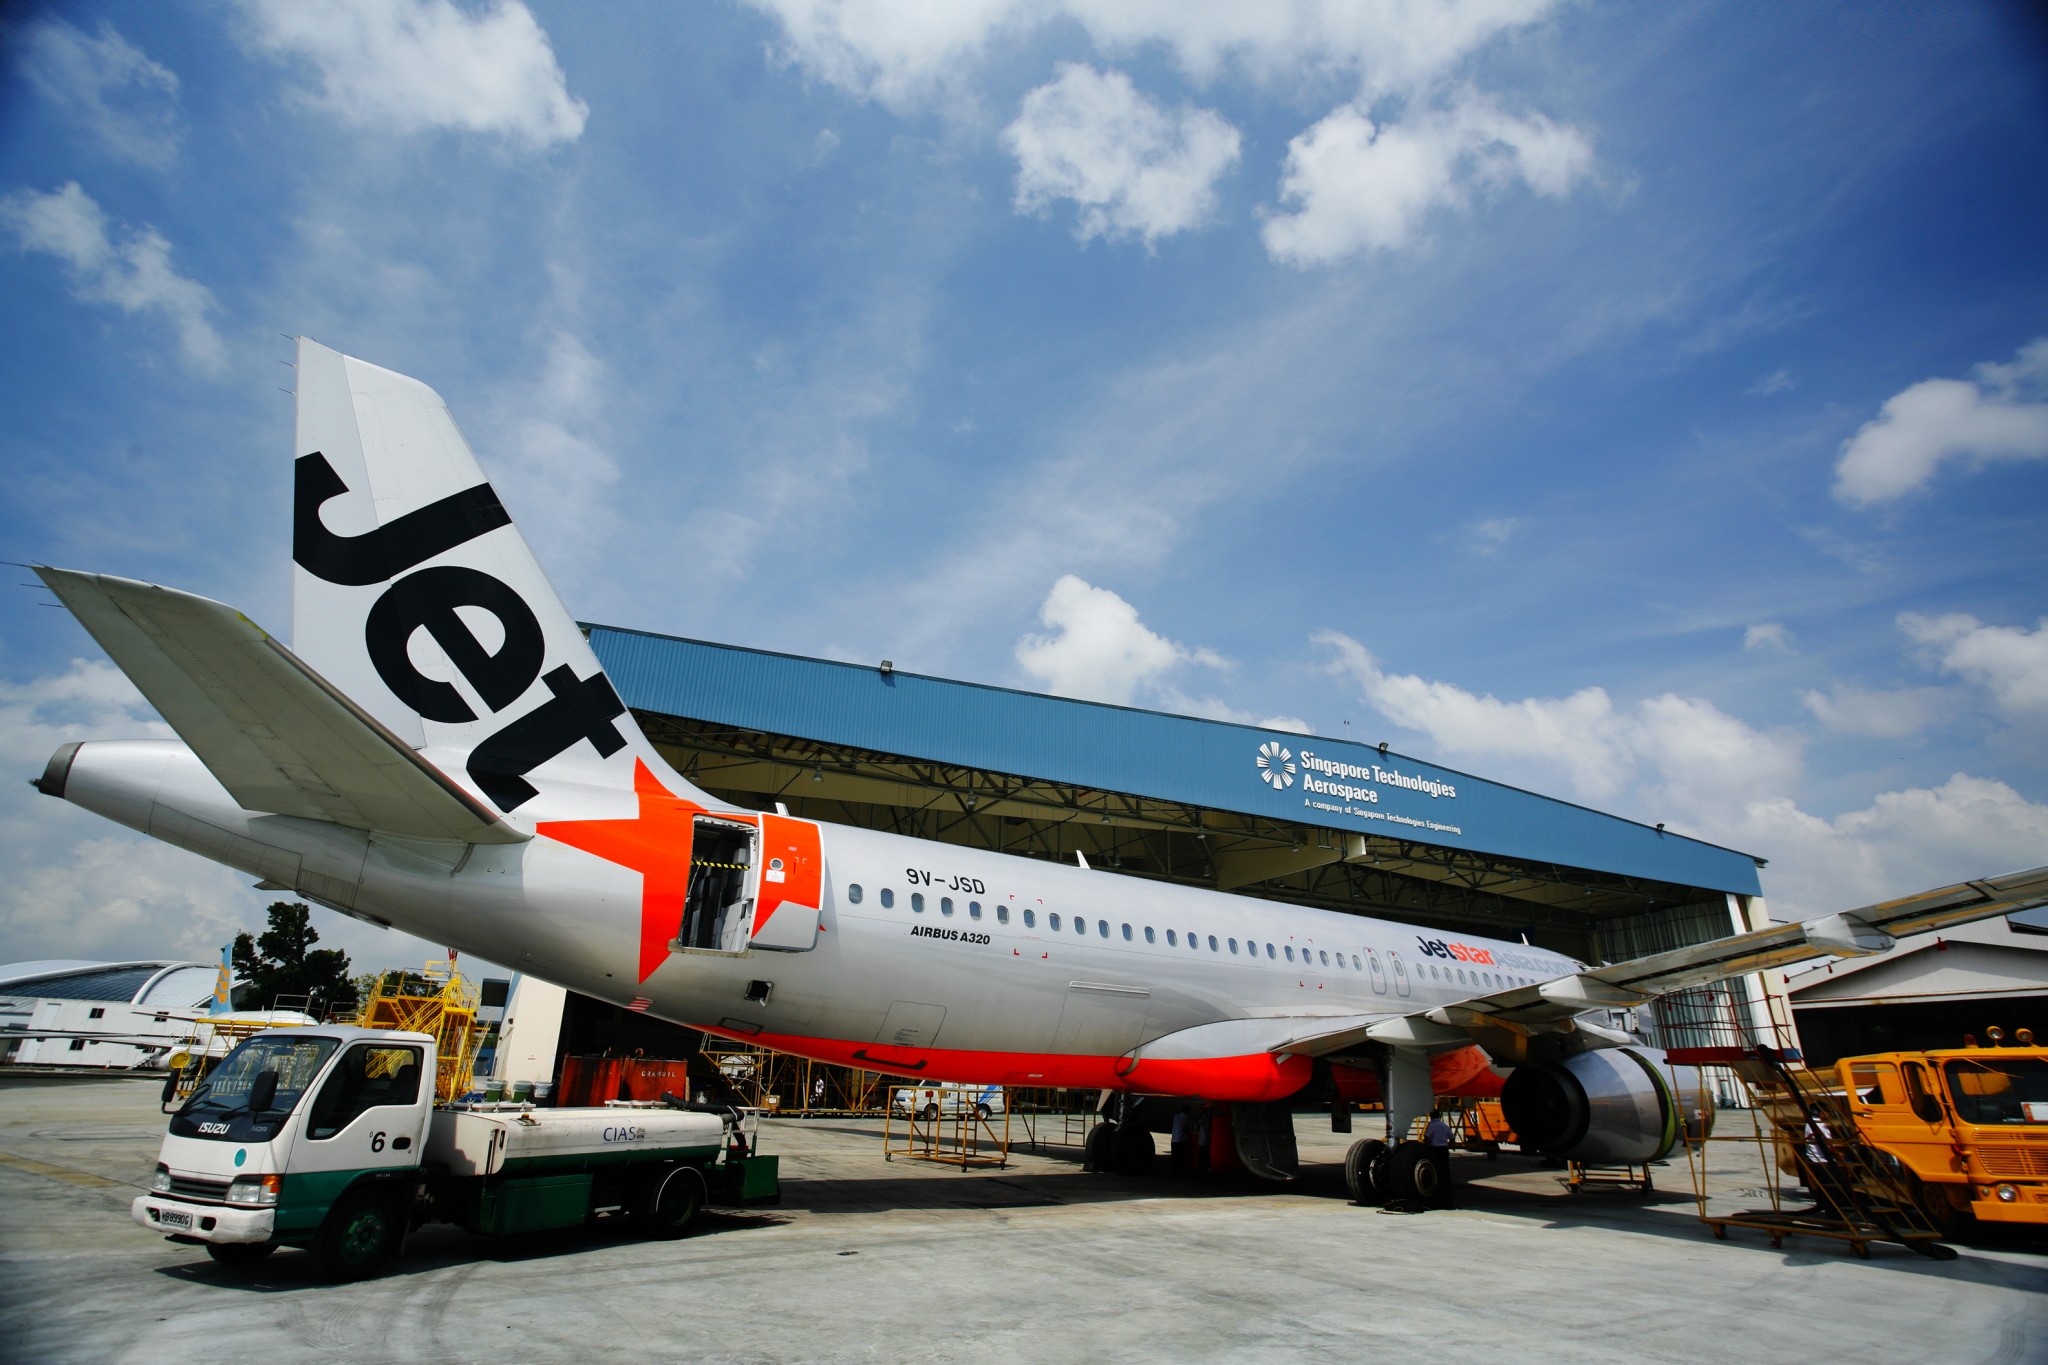 Jetstar Asia extends flight suspensions to May 31